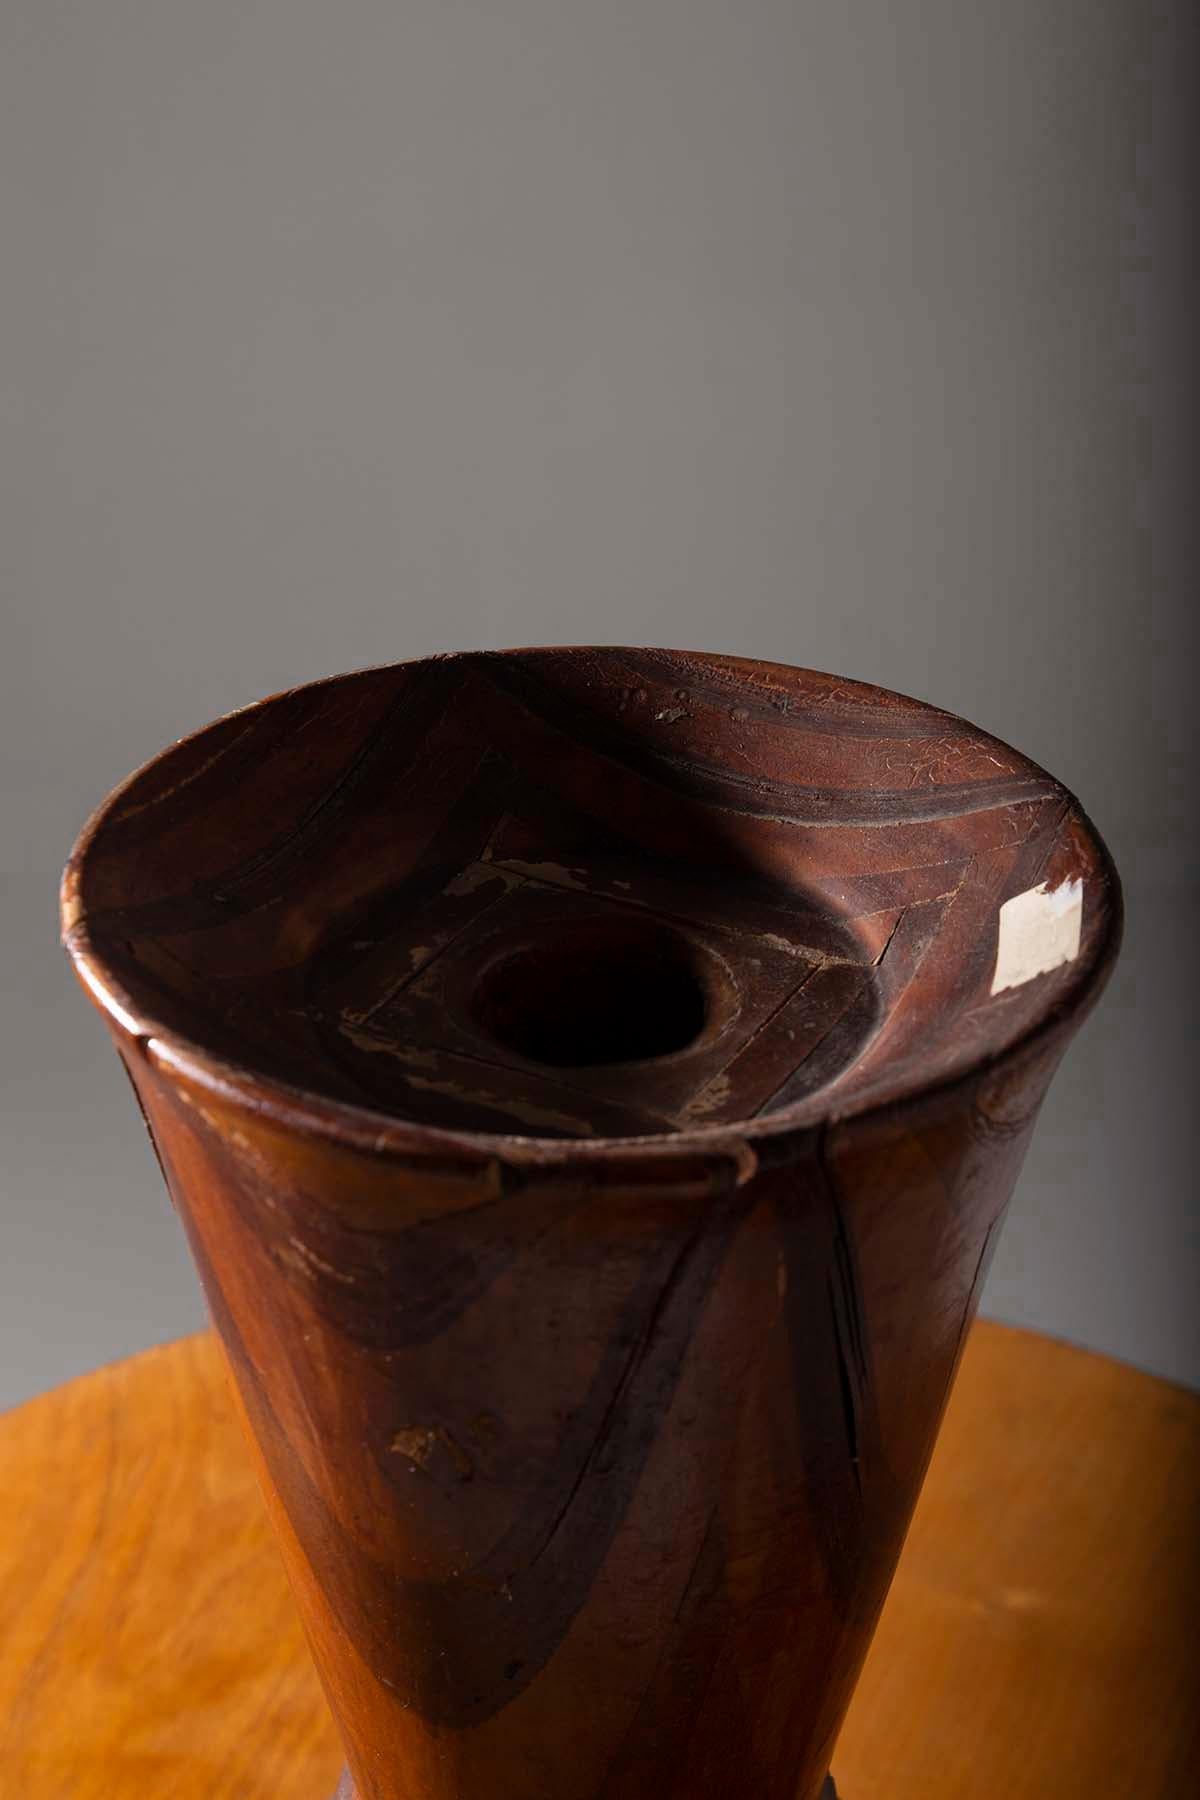 Cet exquis vase décoratif américain, habilement fabriqué dans les années 1950, est un véritable bijou qui saura conquérir votre cœur. Sculptée à la main dans des bois précieux de différentes essences, c'est une œuvre artisanale magistrale qui porte